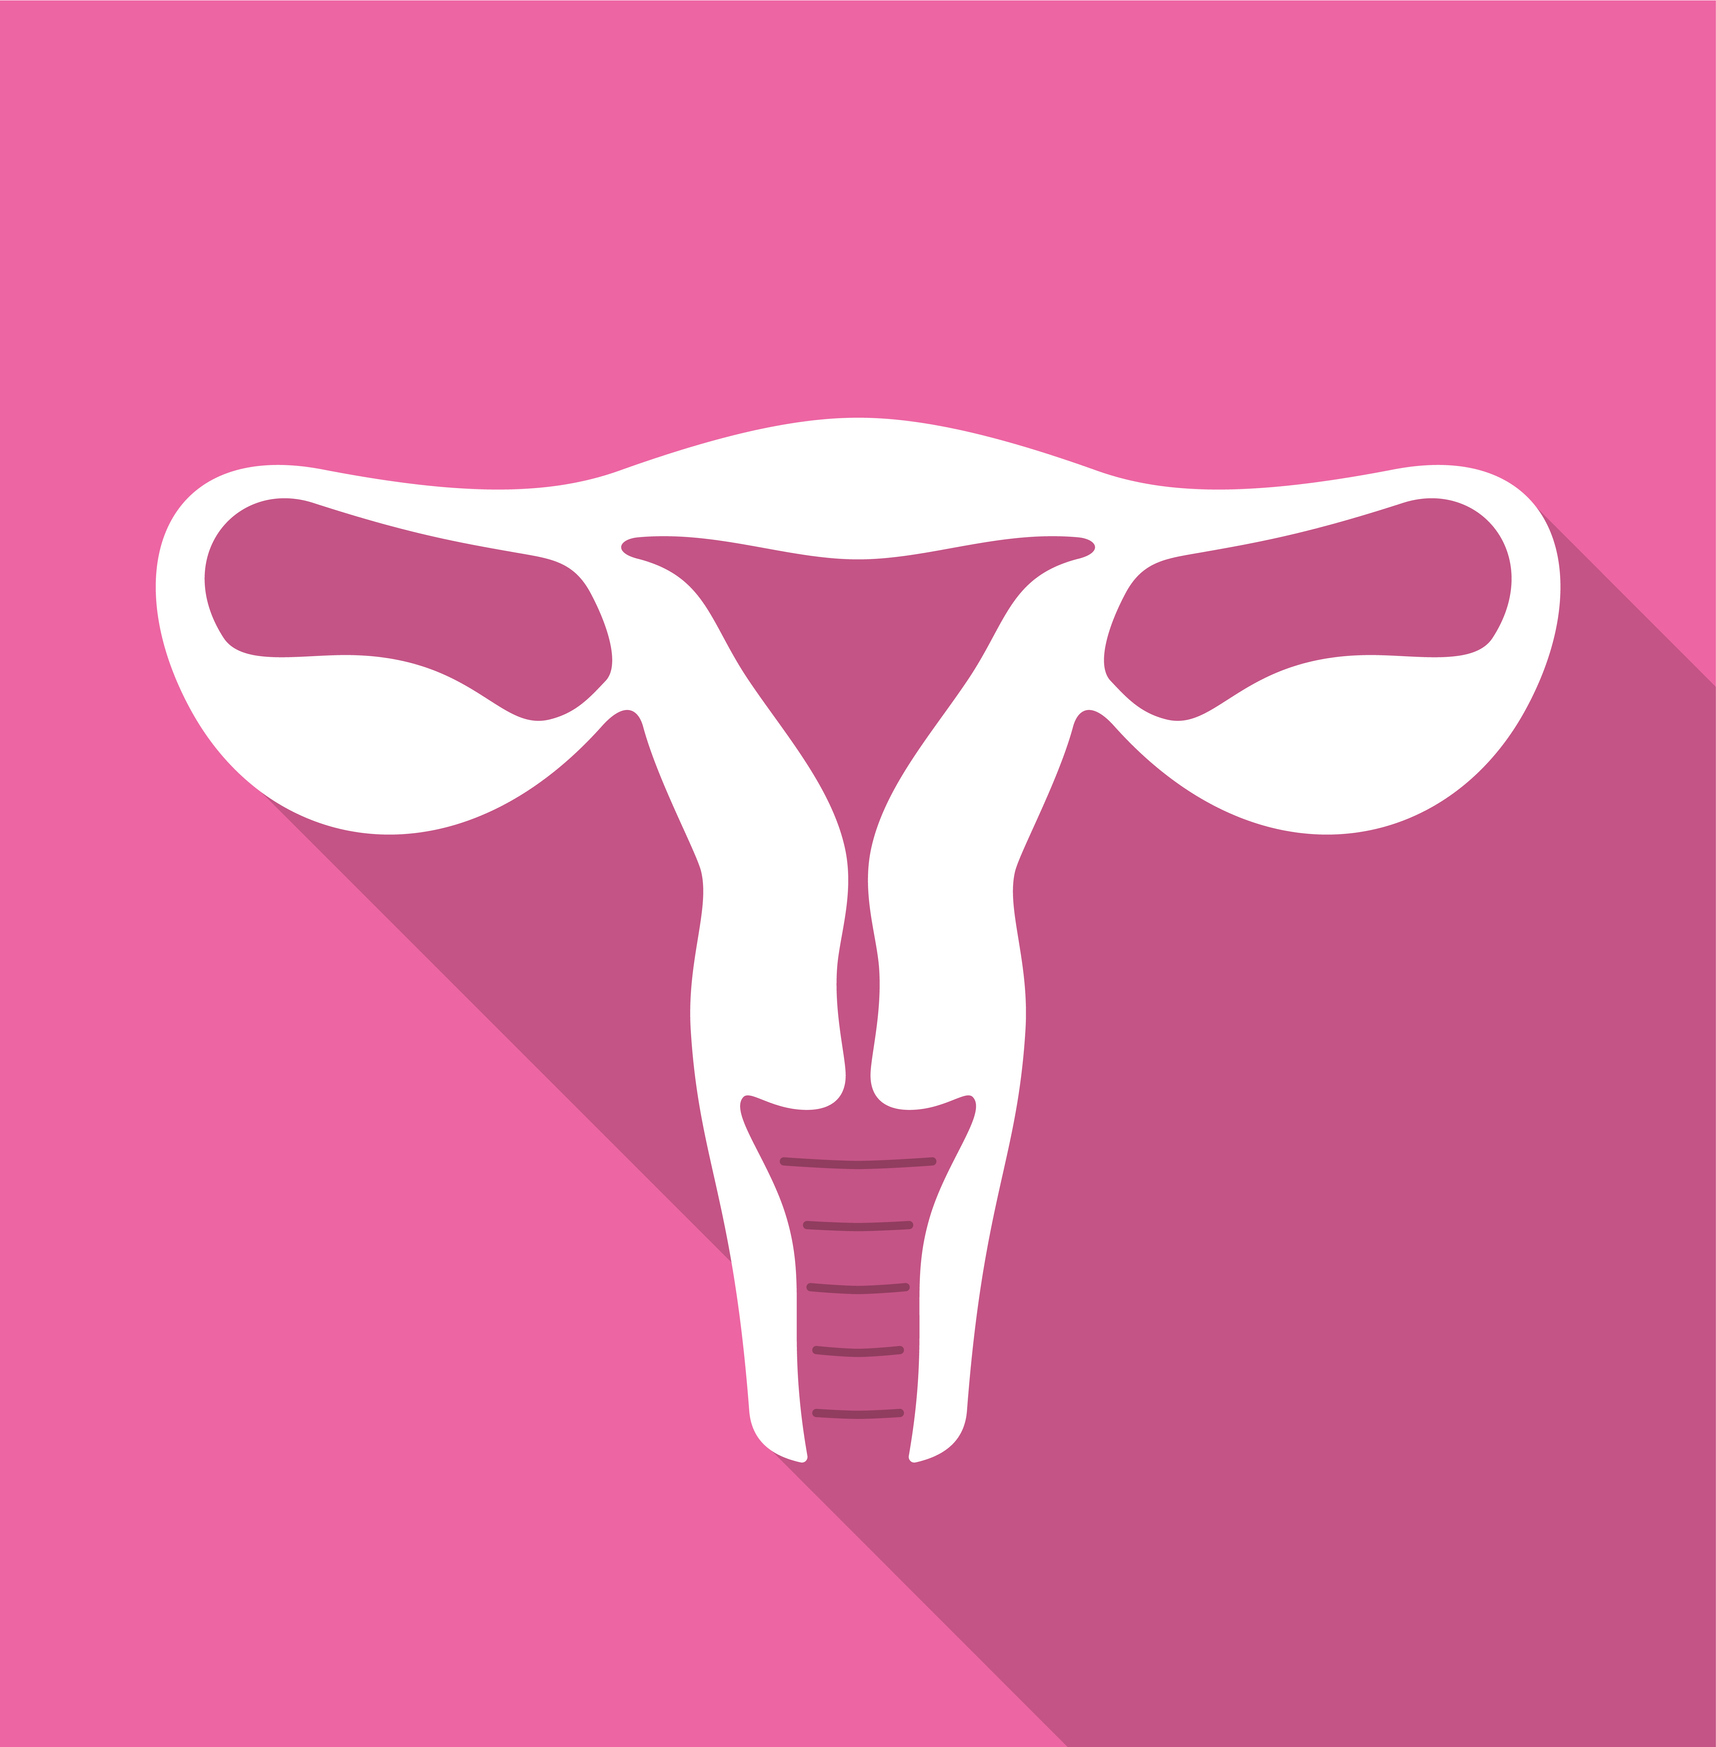 woman’s uterus icon, vector illustration